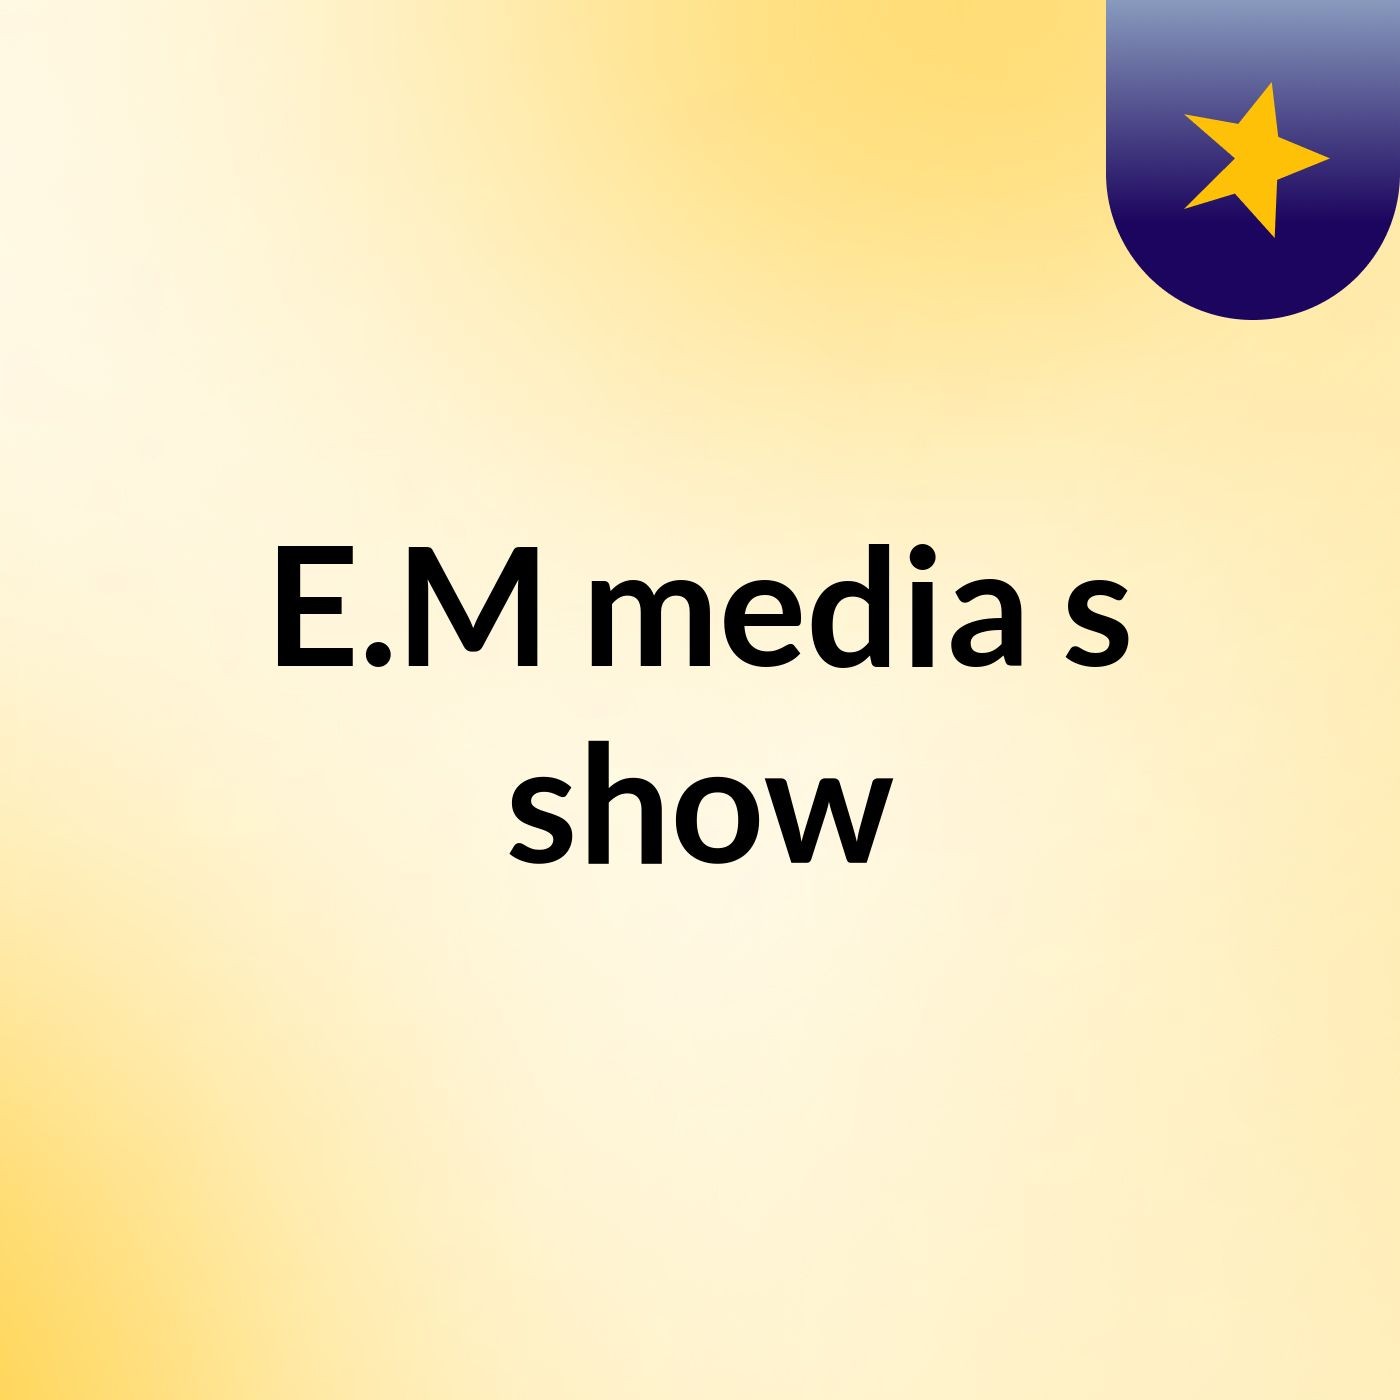 E.M media's show